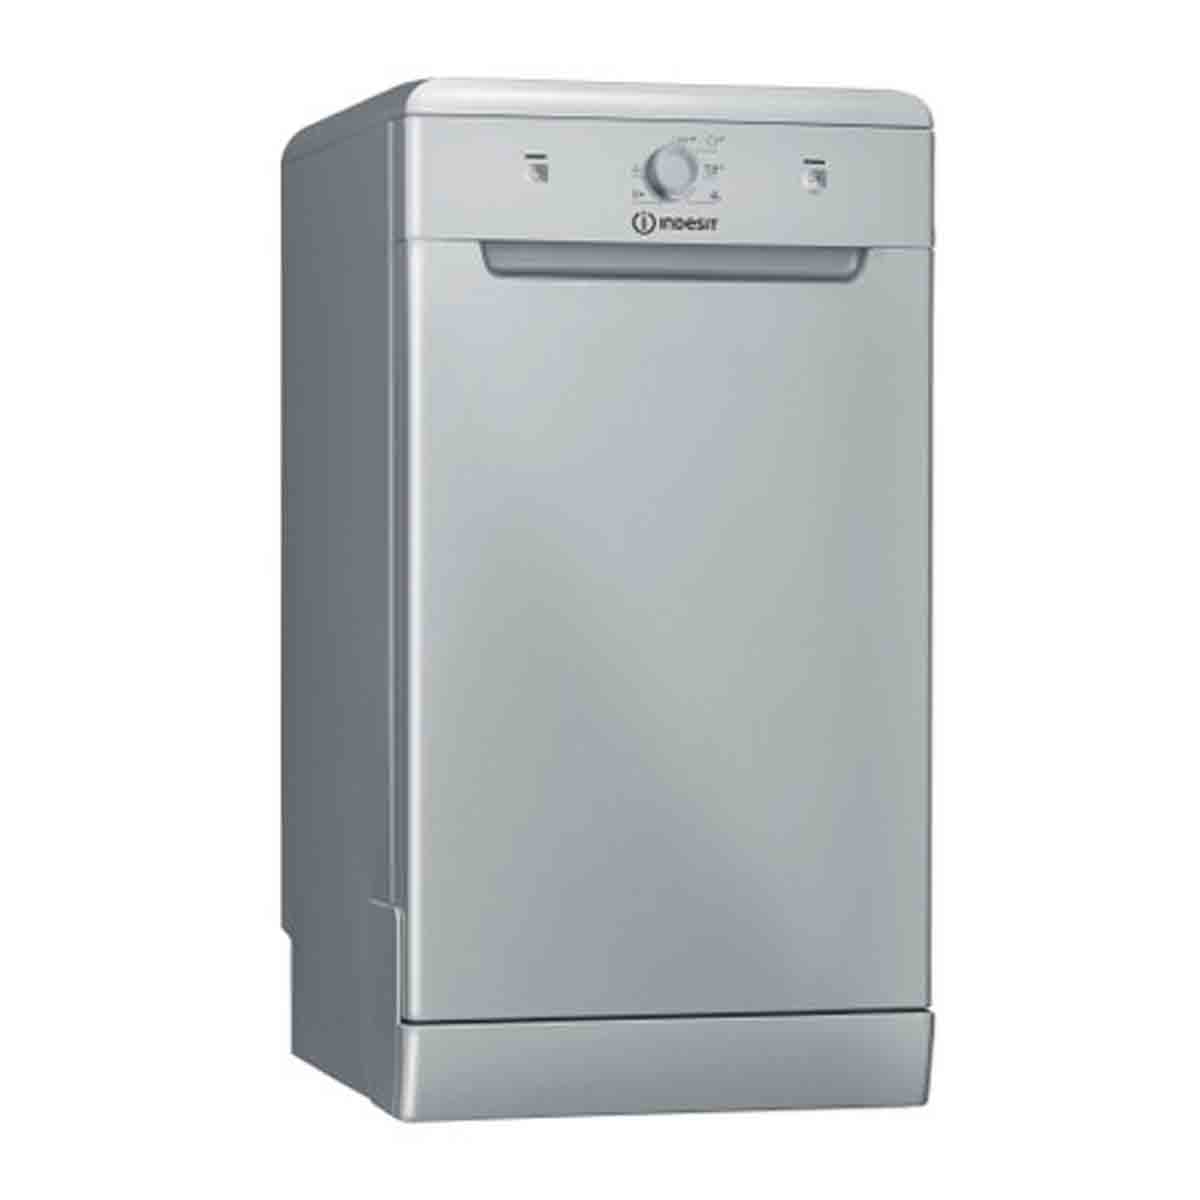 Indesit DSFE 1B10 S UK N Dishwasher - Silver